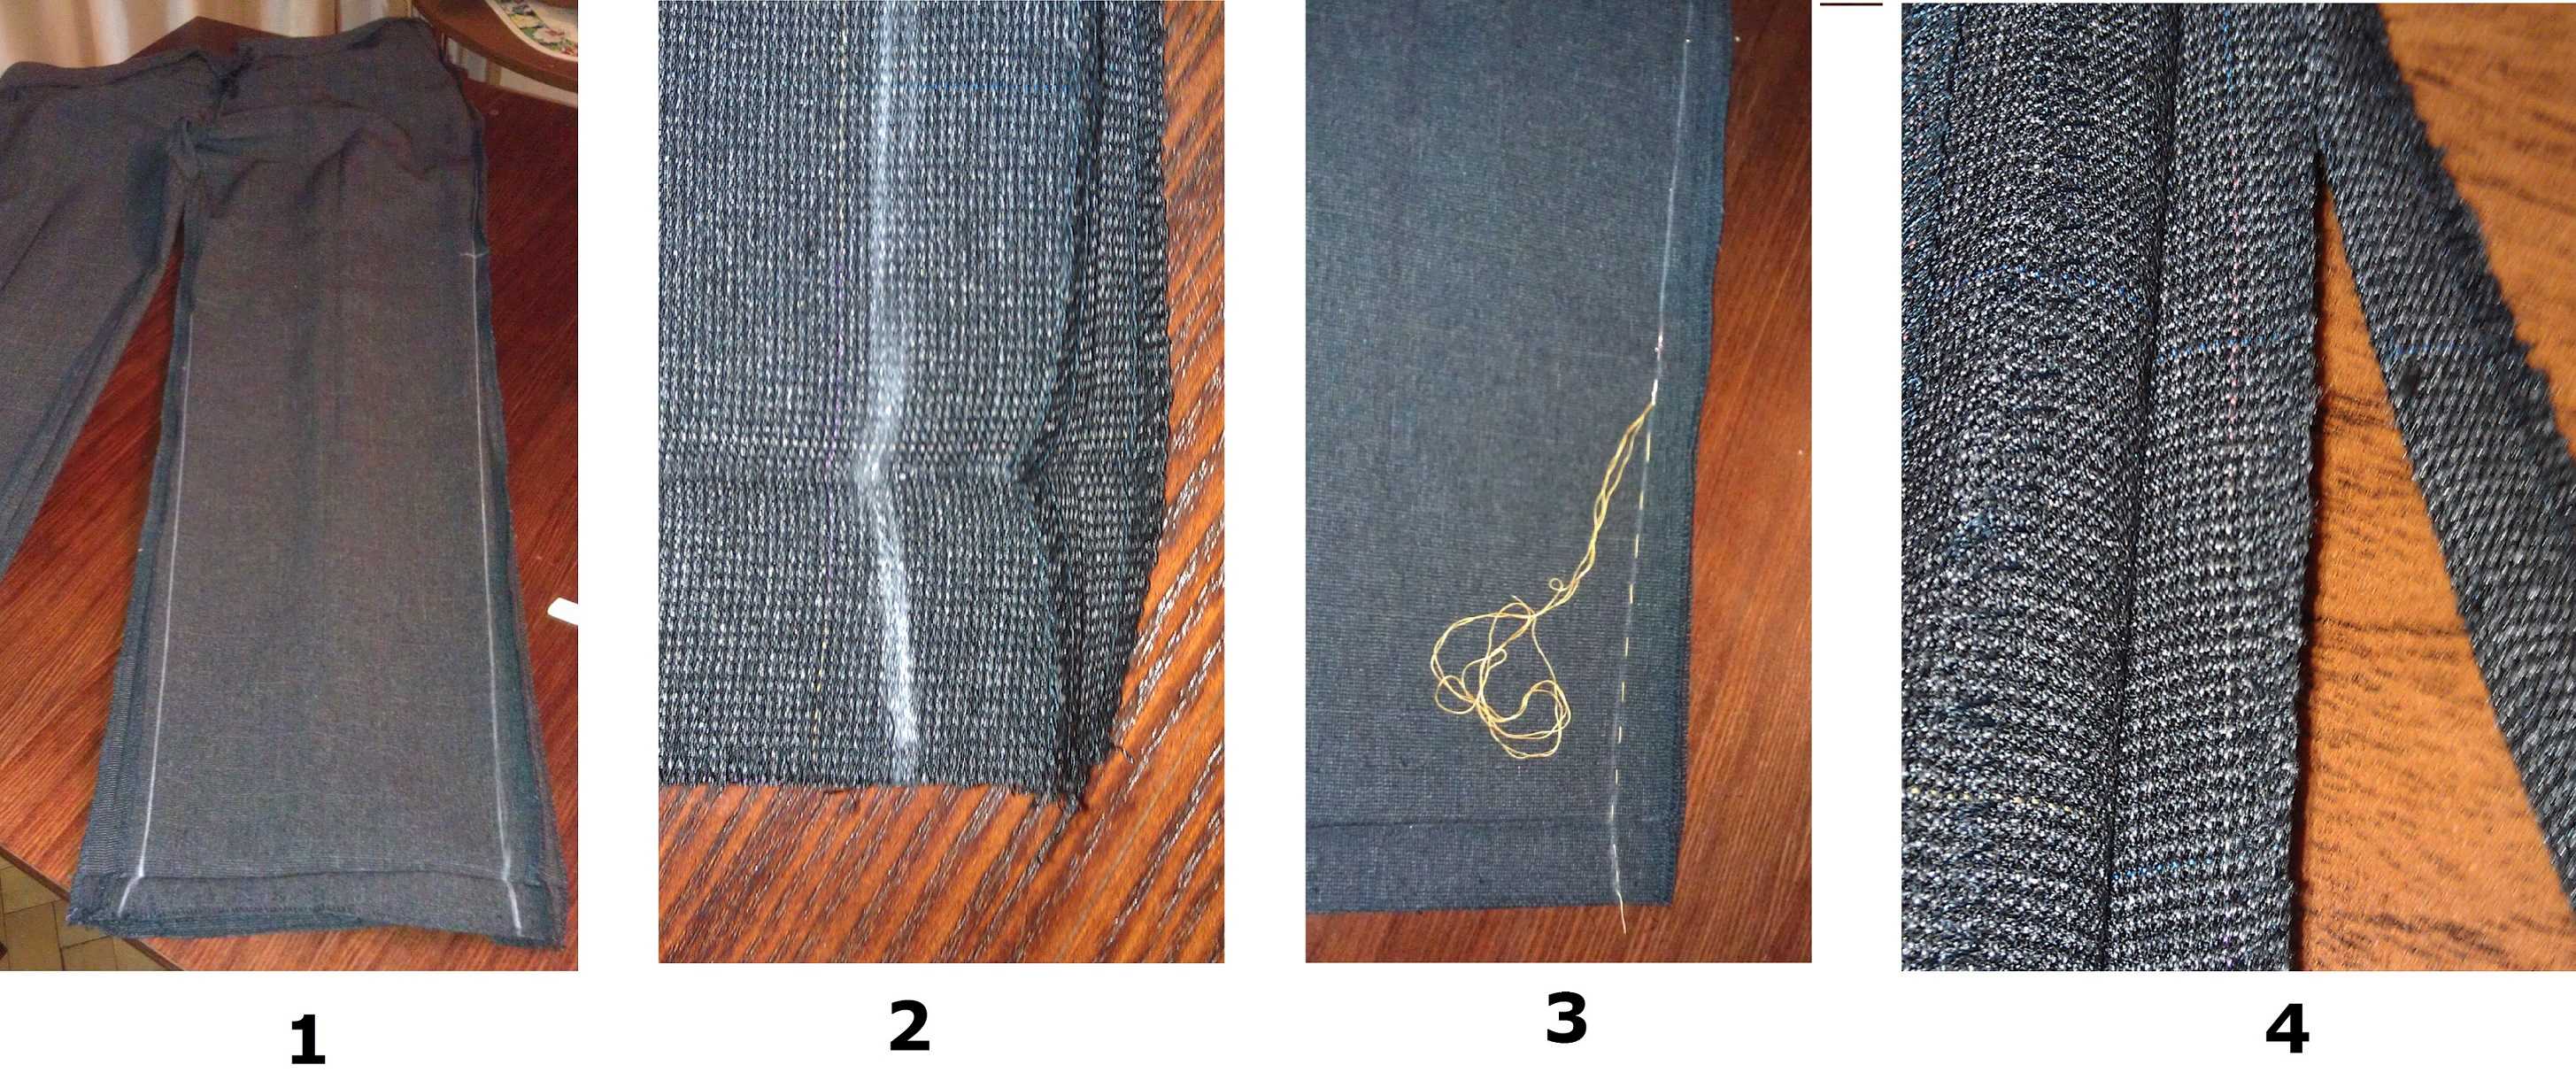 Как ушить джинсы по бокам, в поясе в домашних условиях